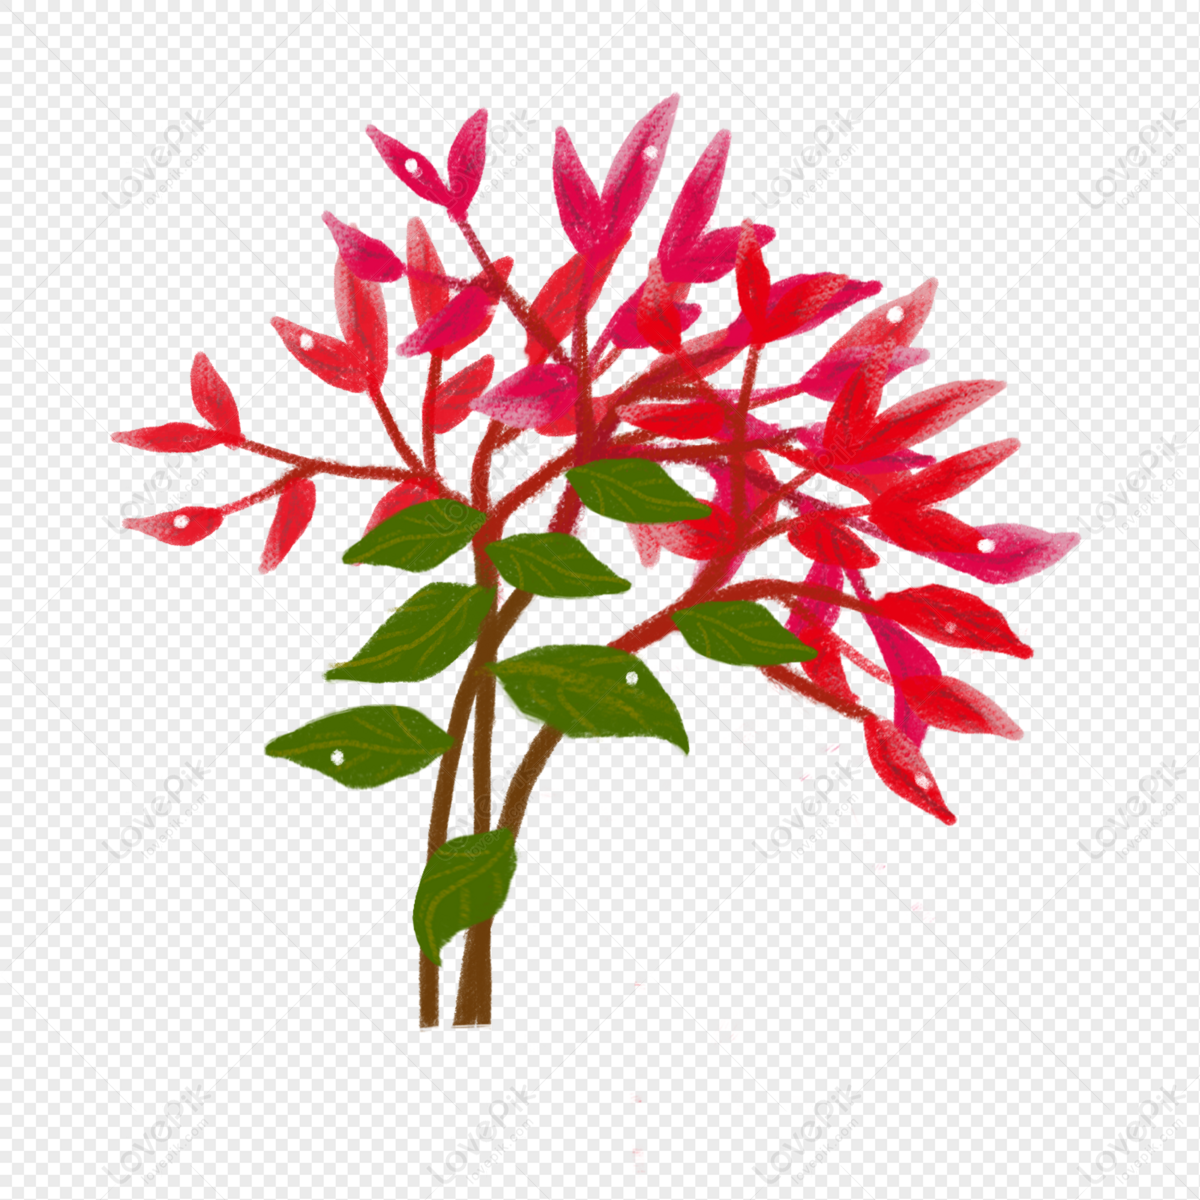 Árvore De Folhas Vermelhas PNG Imagens Gratuitas Para Download - Lovepik